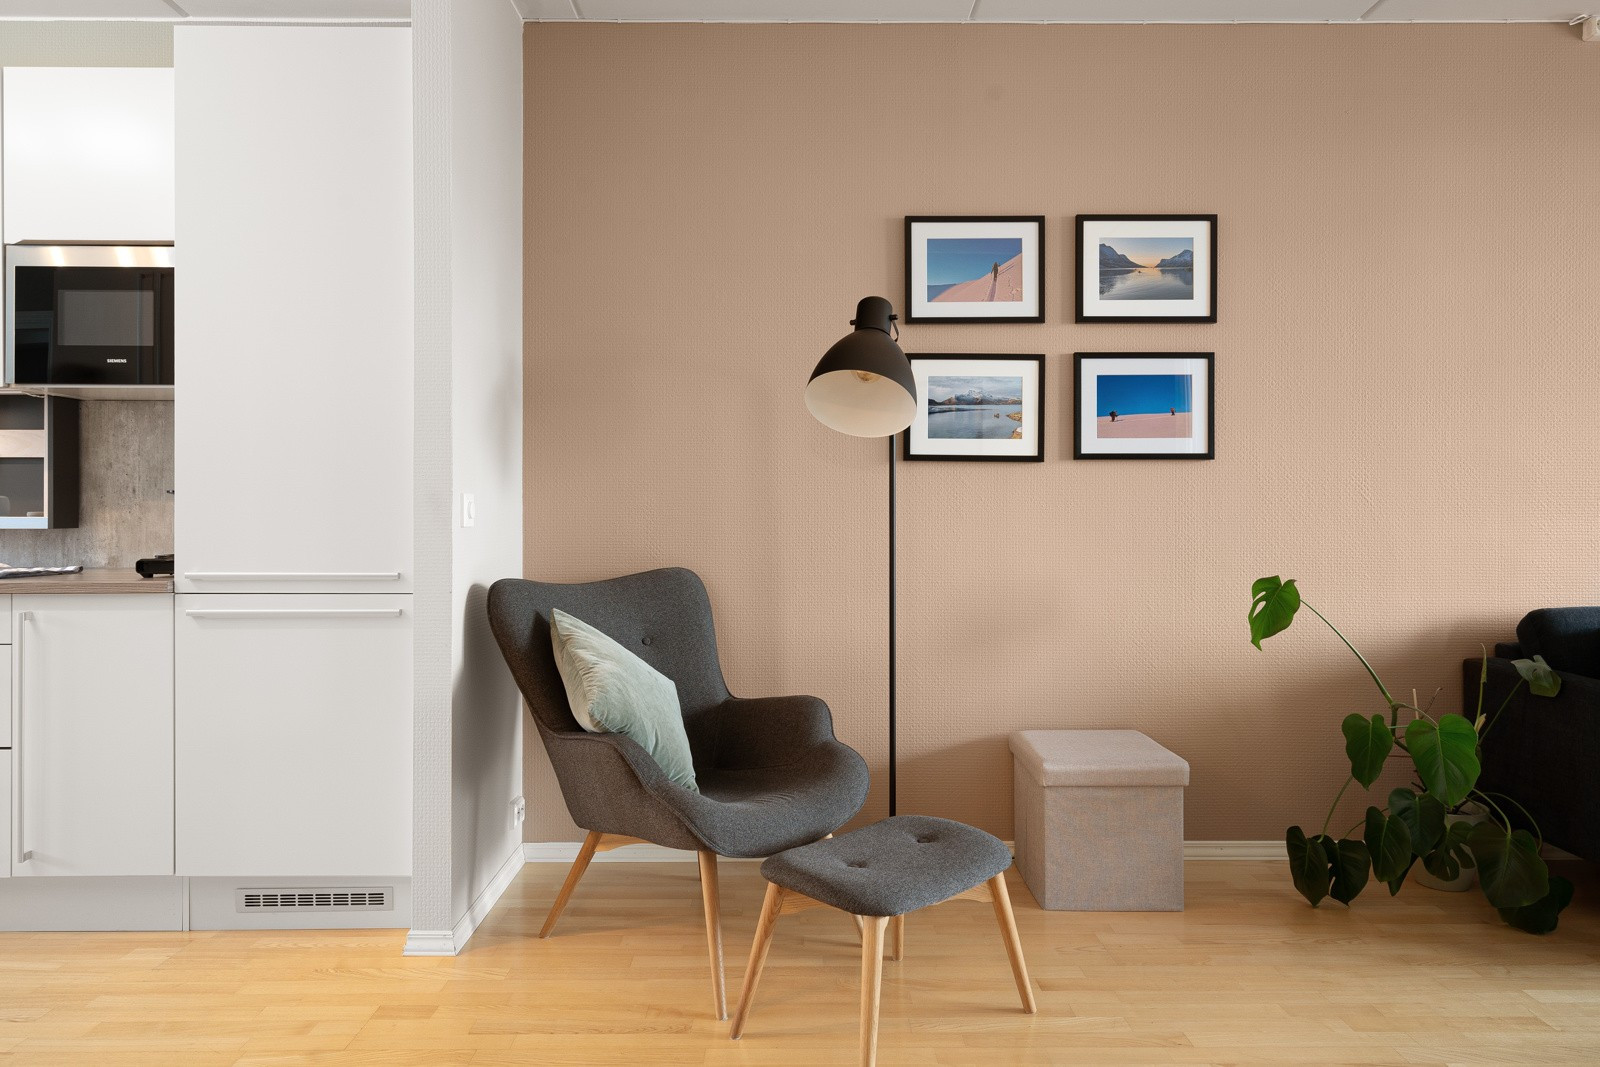 Rommet er malt i en behagelig farge som skaper et lunt bakteppe for møbler og interiør.